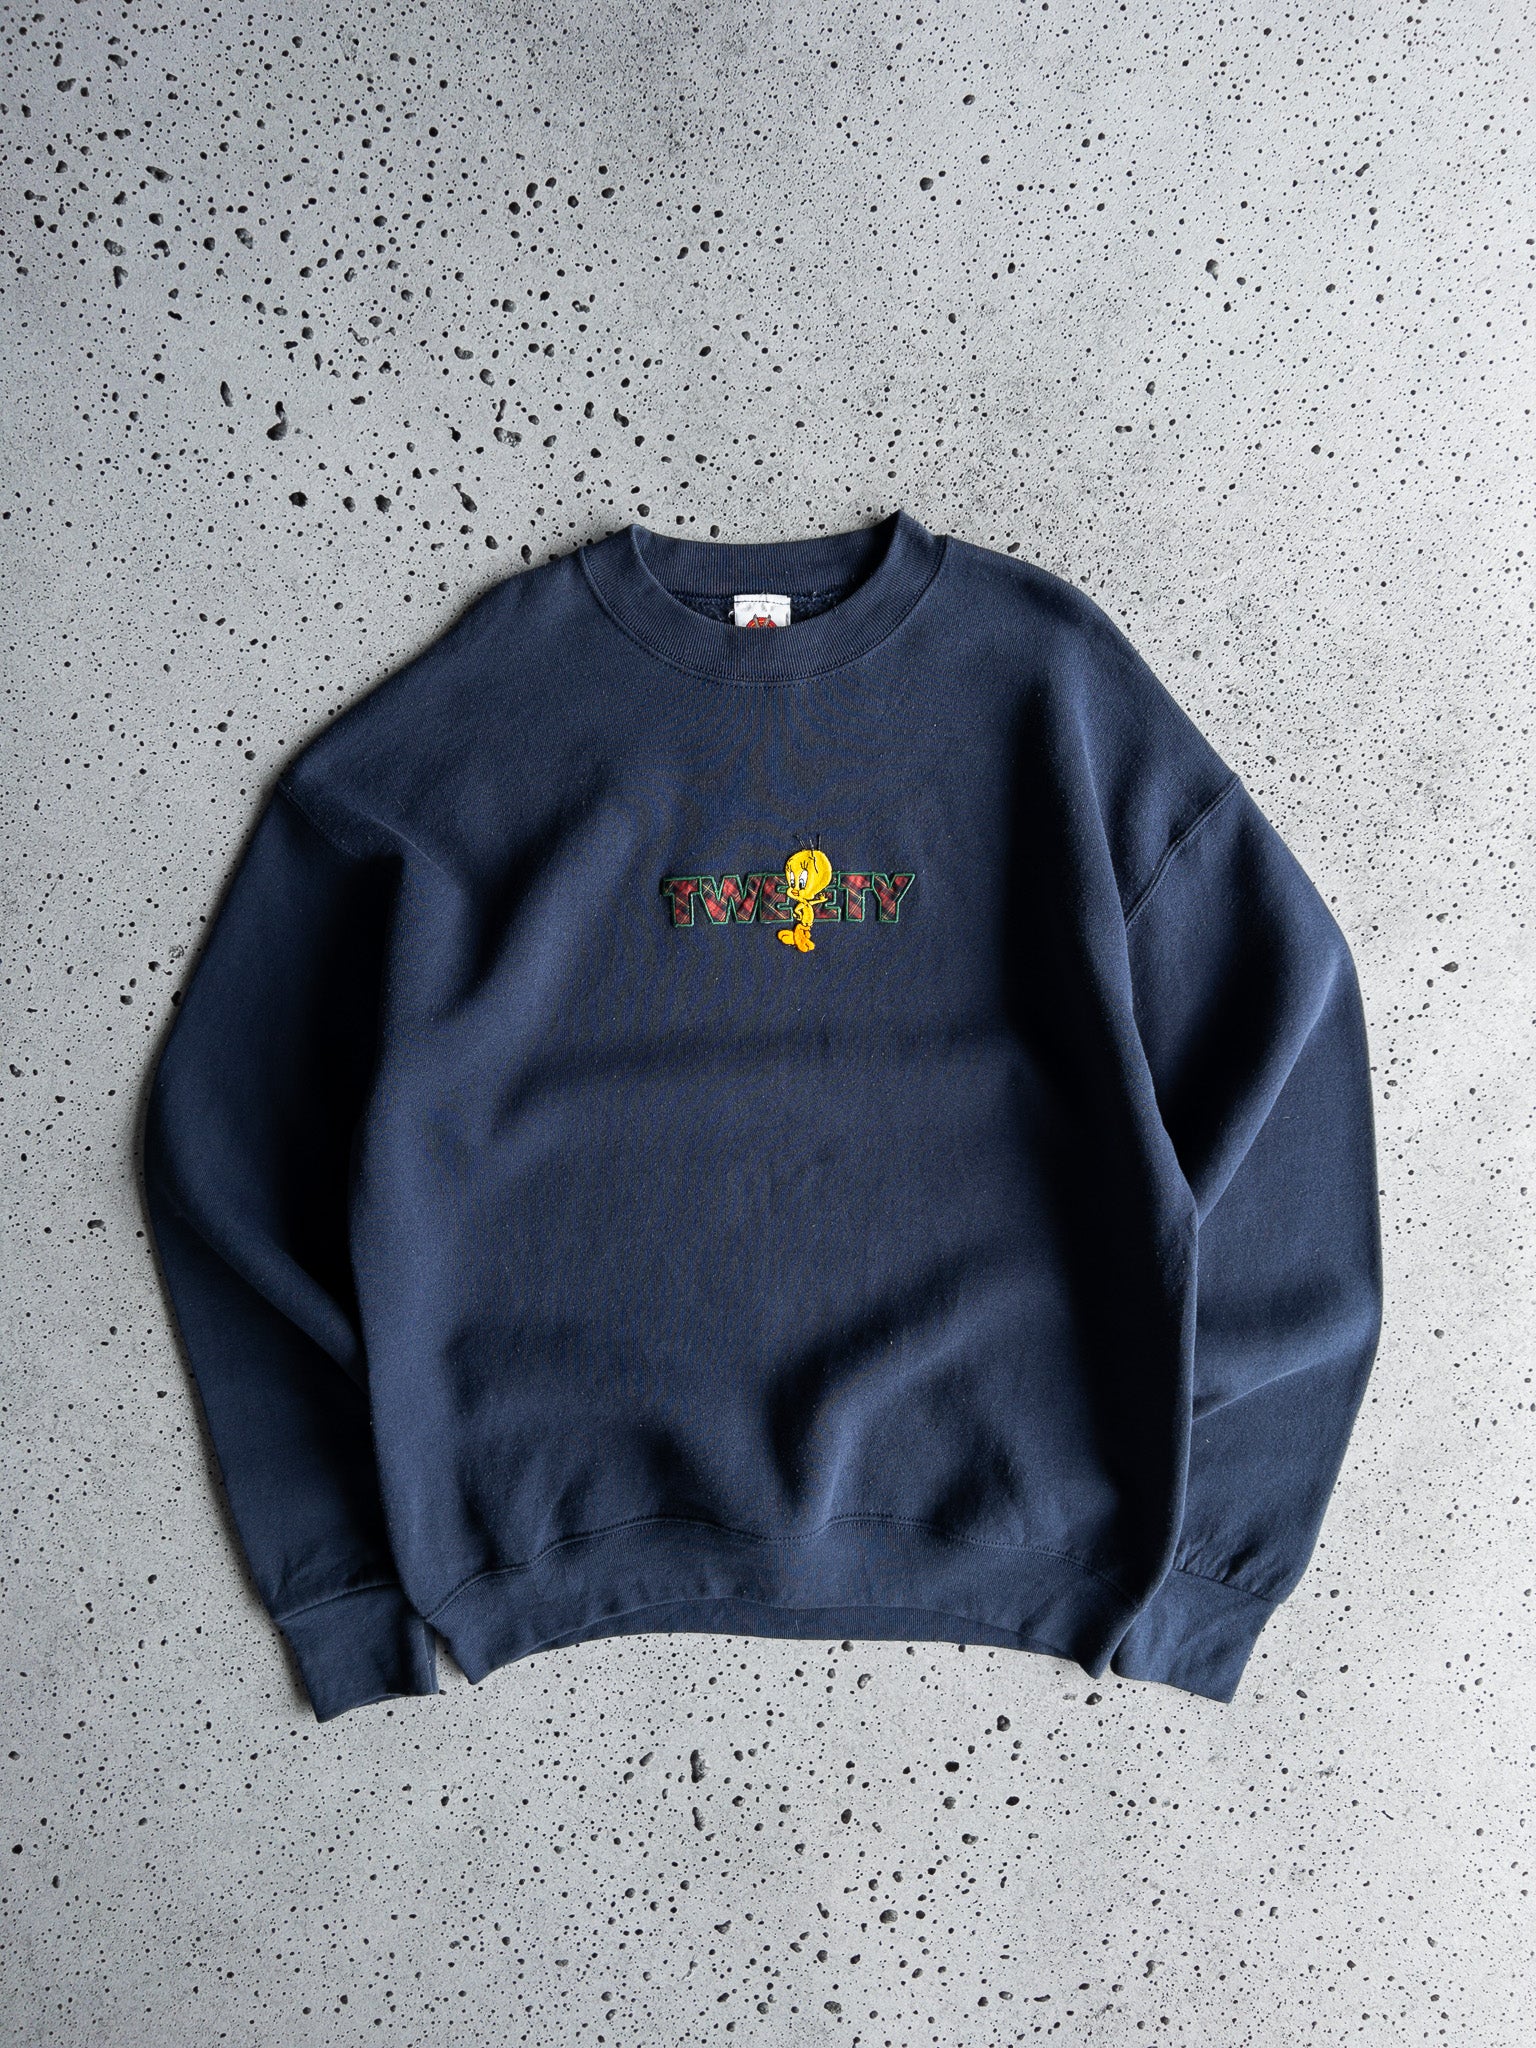 Vintage Tweety Sweatshirt (L)